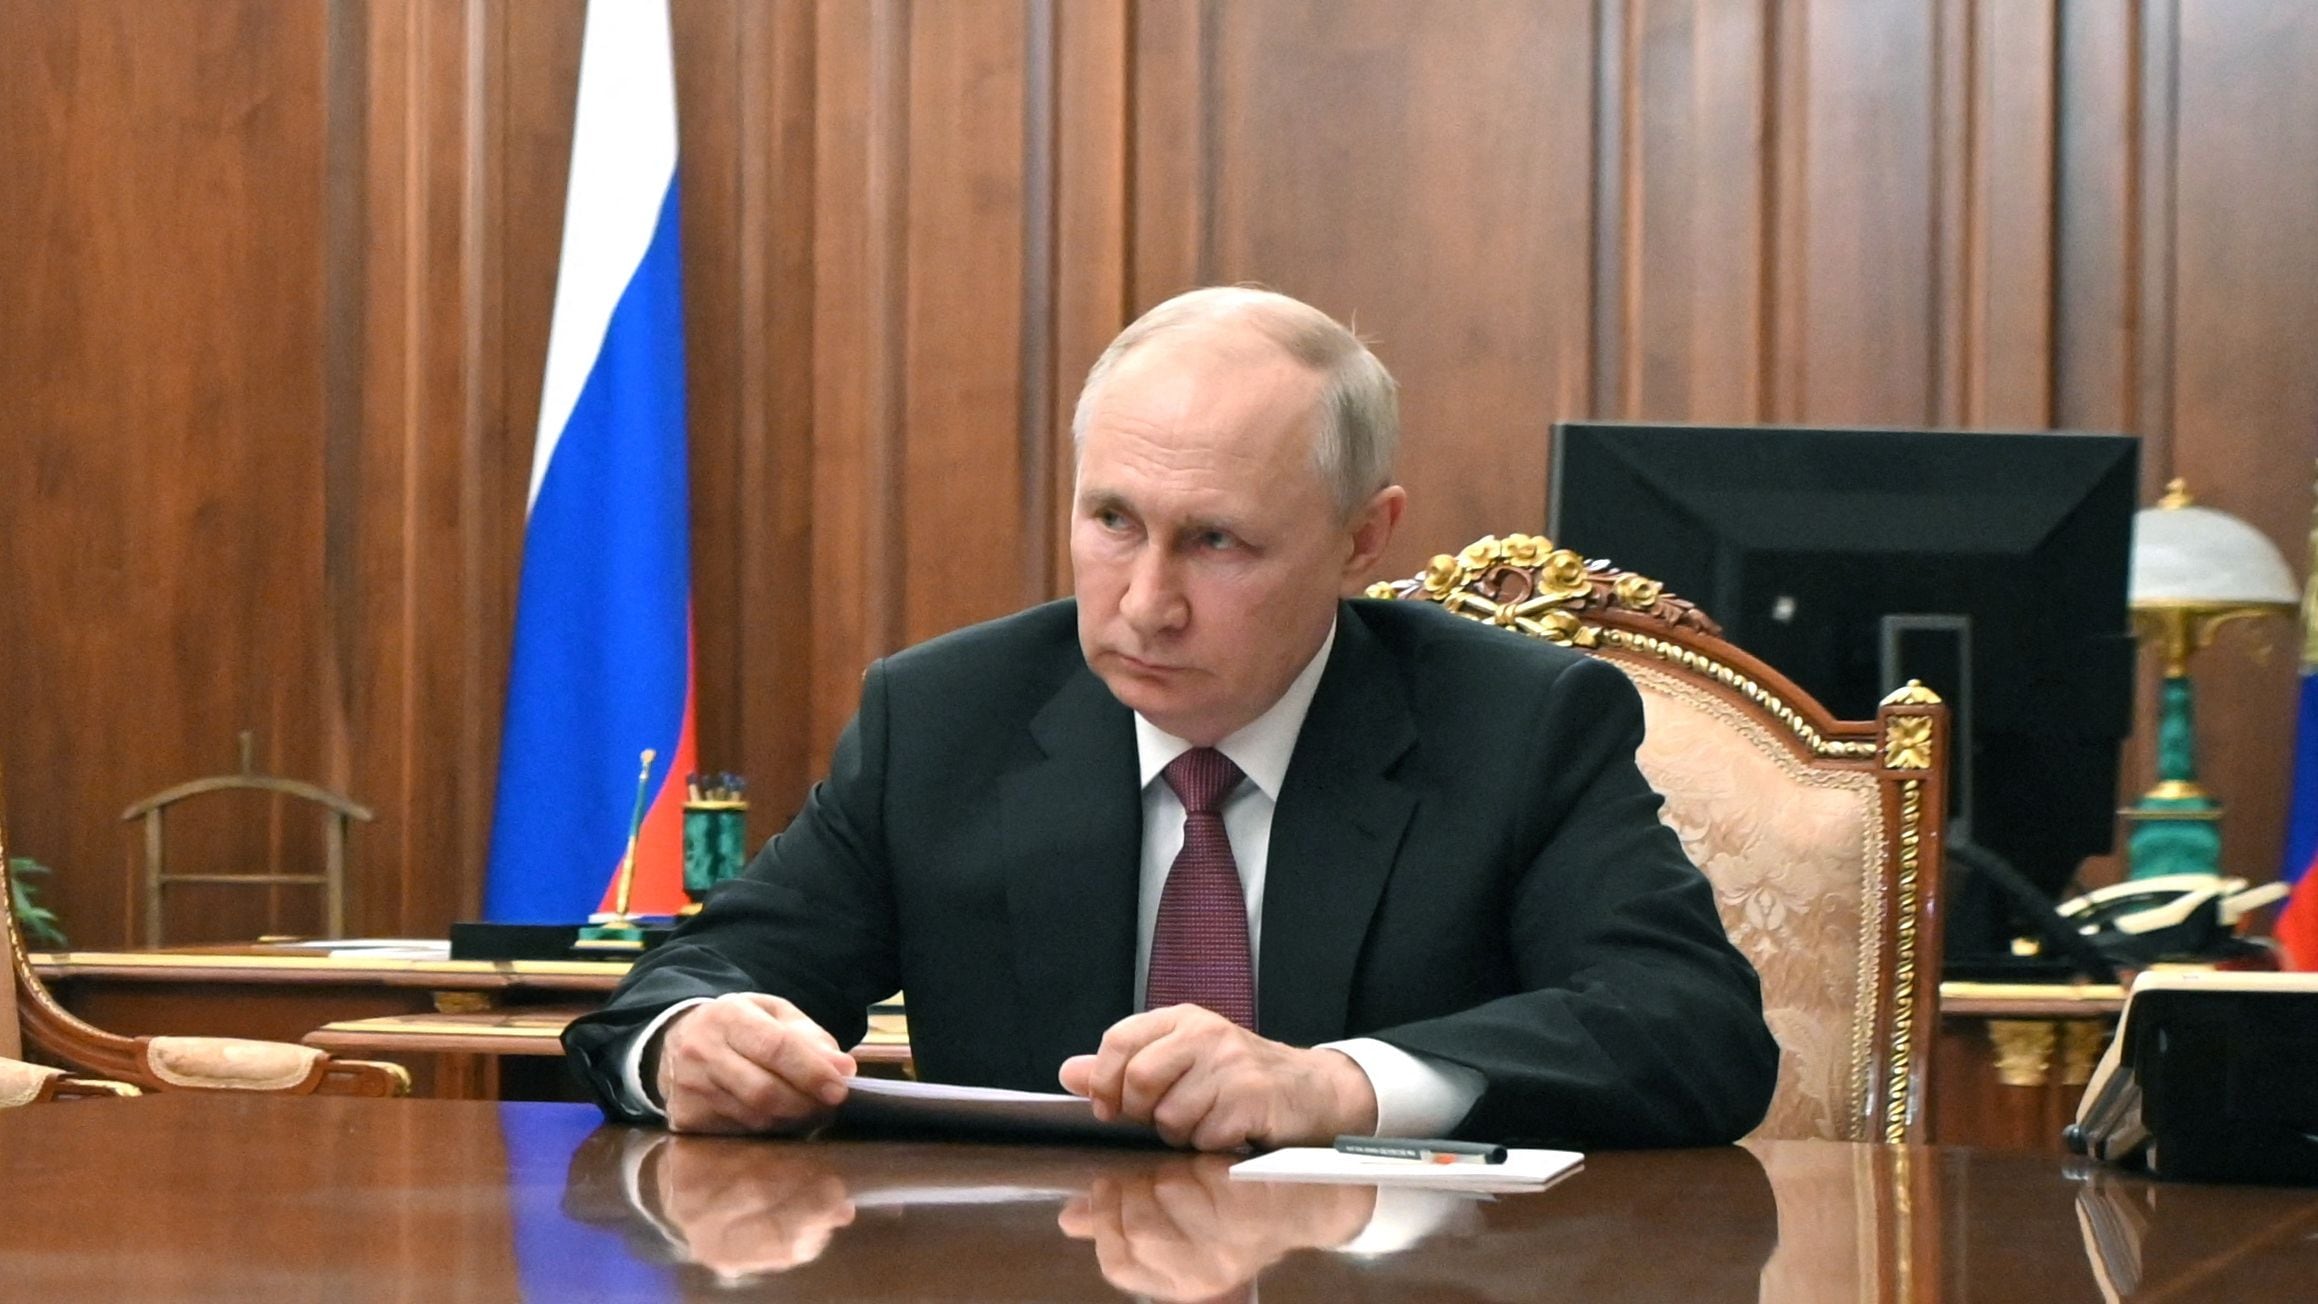 Putin es acusado de poner en peligro la seguridad alimentaria mundial (Sputnik/Mikhail Klimentyev/Kremlin via REUTERS)